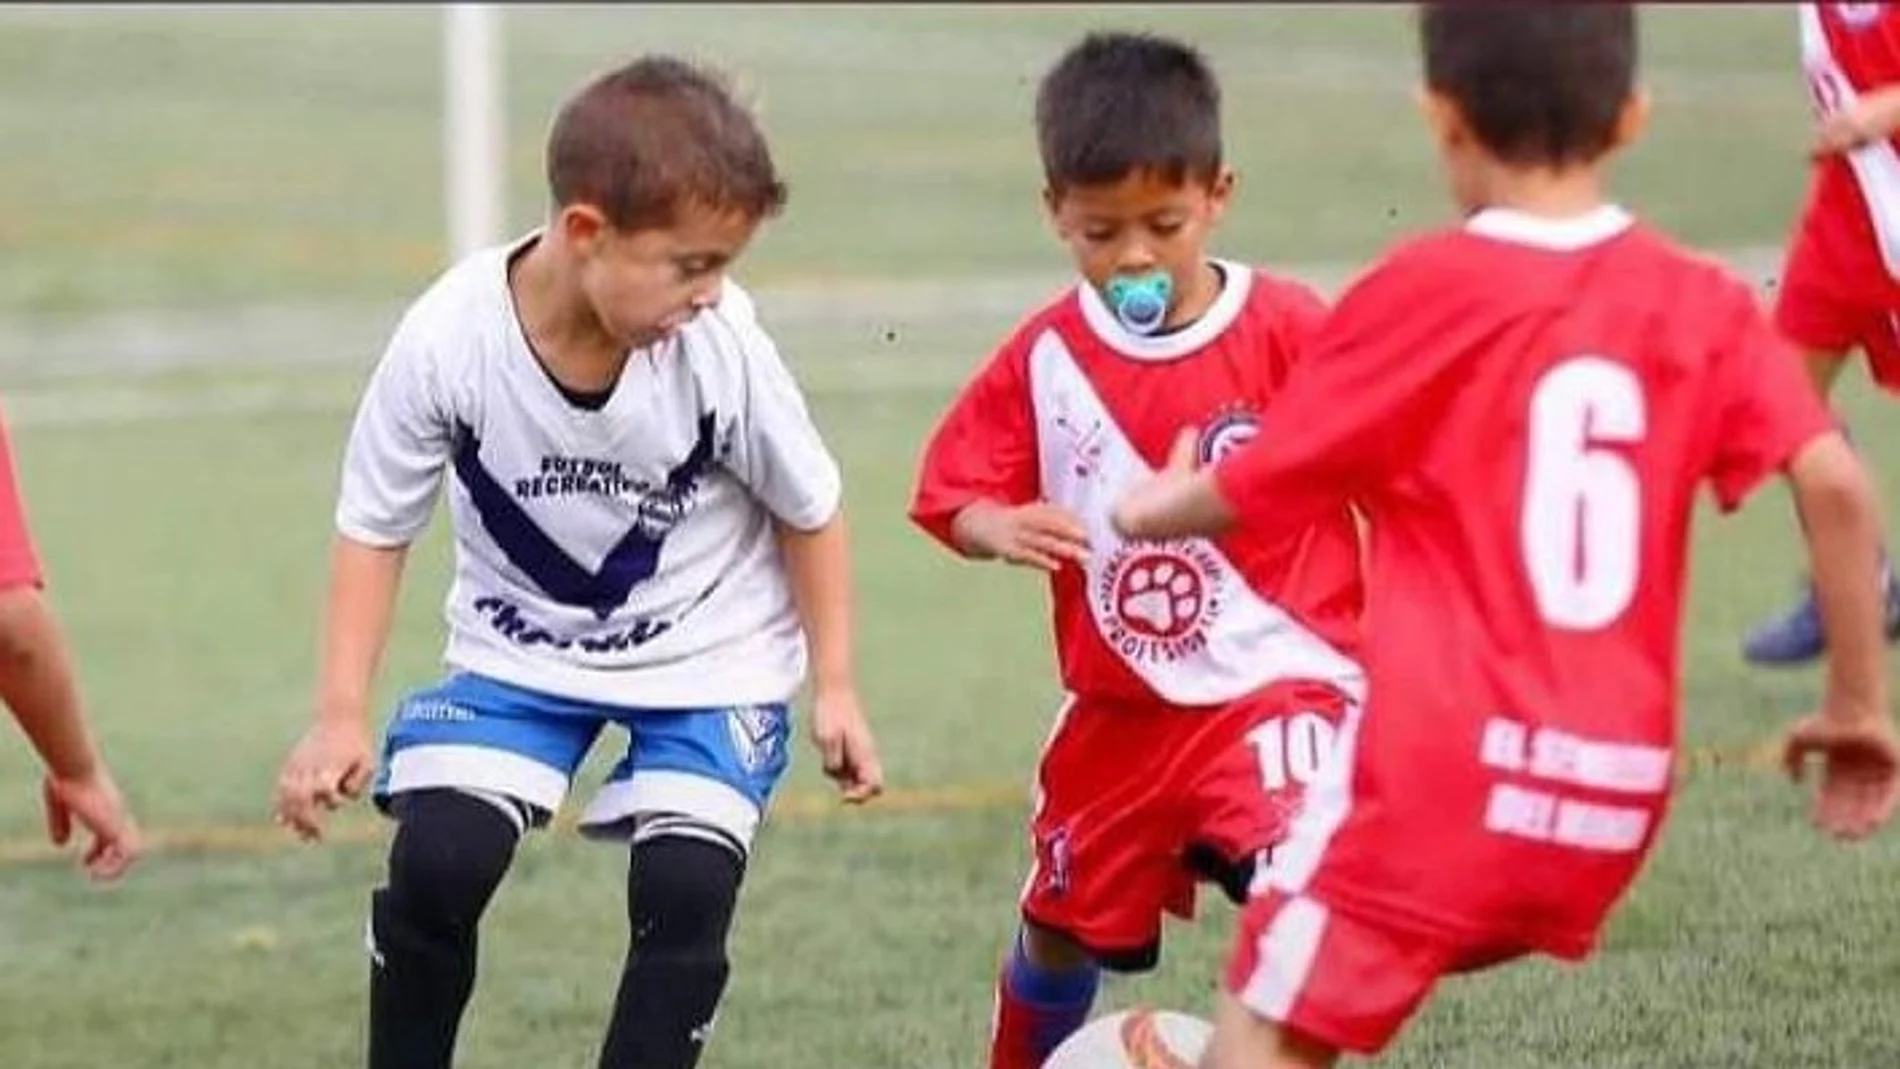 Ulises Cáceres, el niño de 6 años que se ha hecho viral por jugar al fútbol